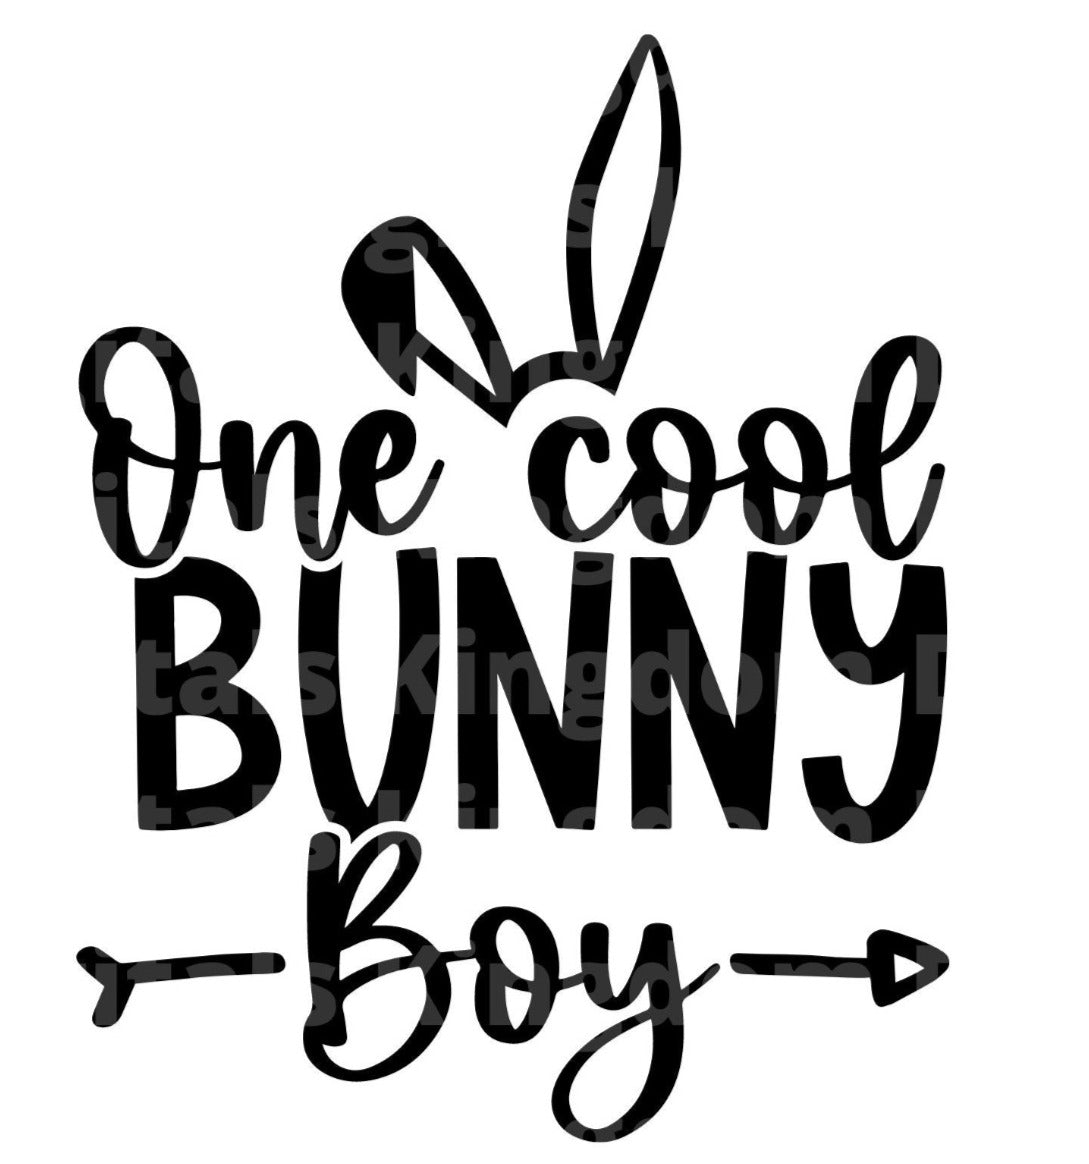 One Cool Bunny Boy